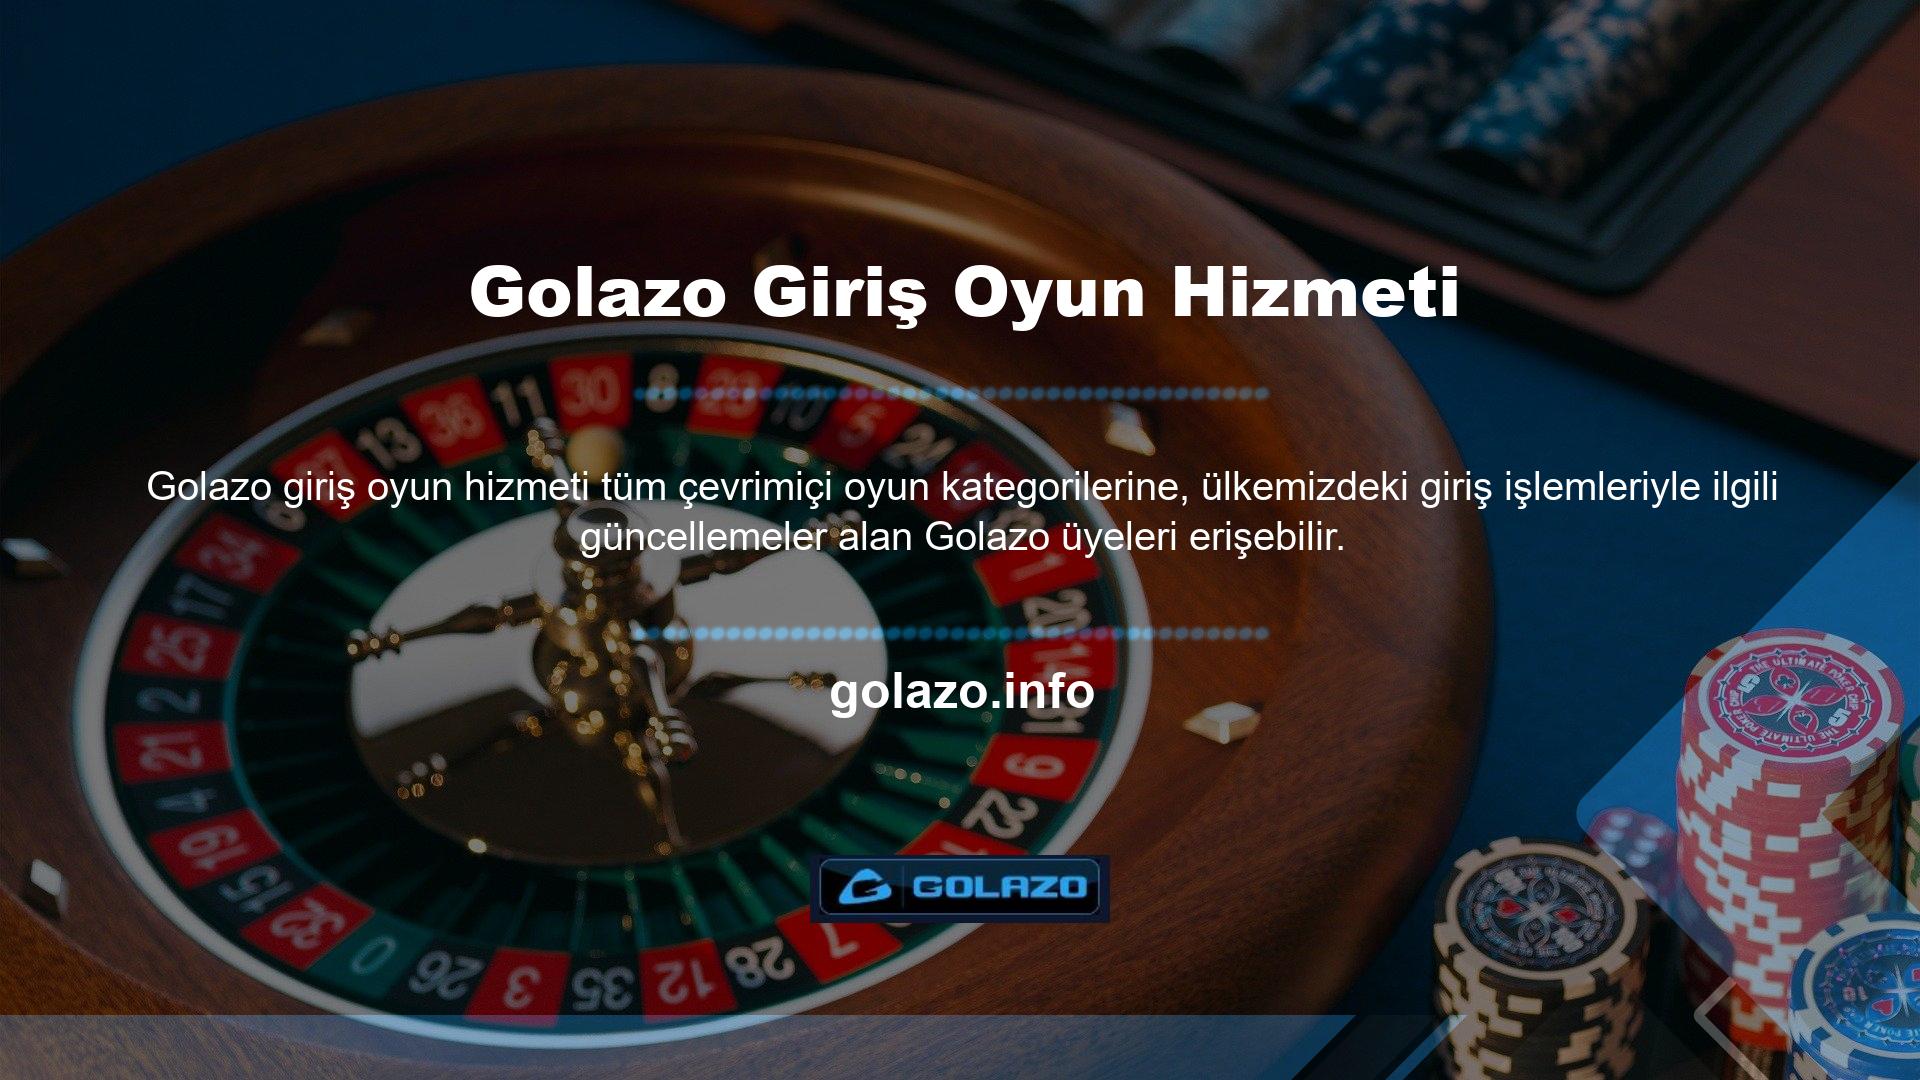 Golazo oturum açma oyun hizmeti temsilcileri, spor bahislerinin yanı sıra slot ve canlı casino oyunlarını yönetme yetkisine sahiptir